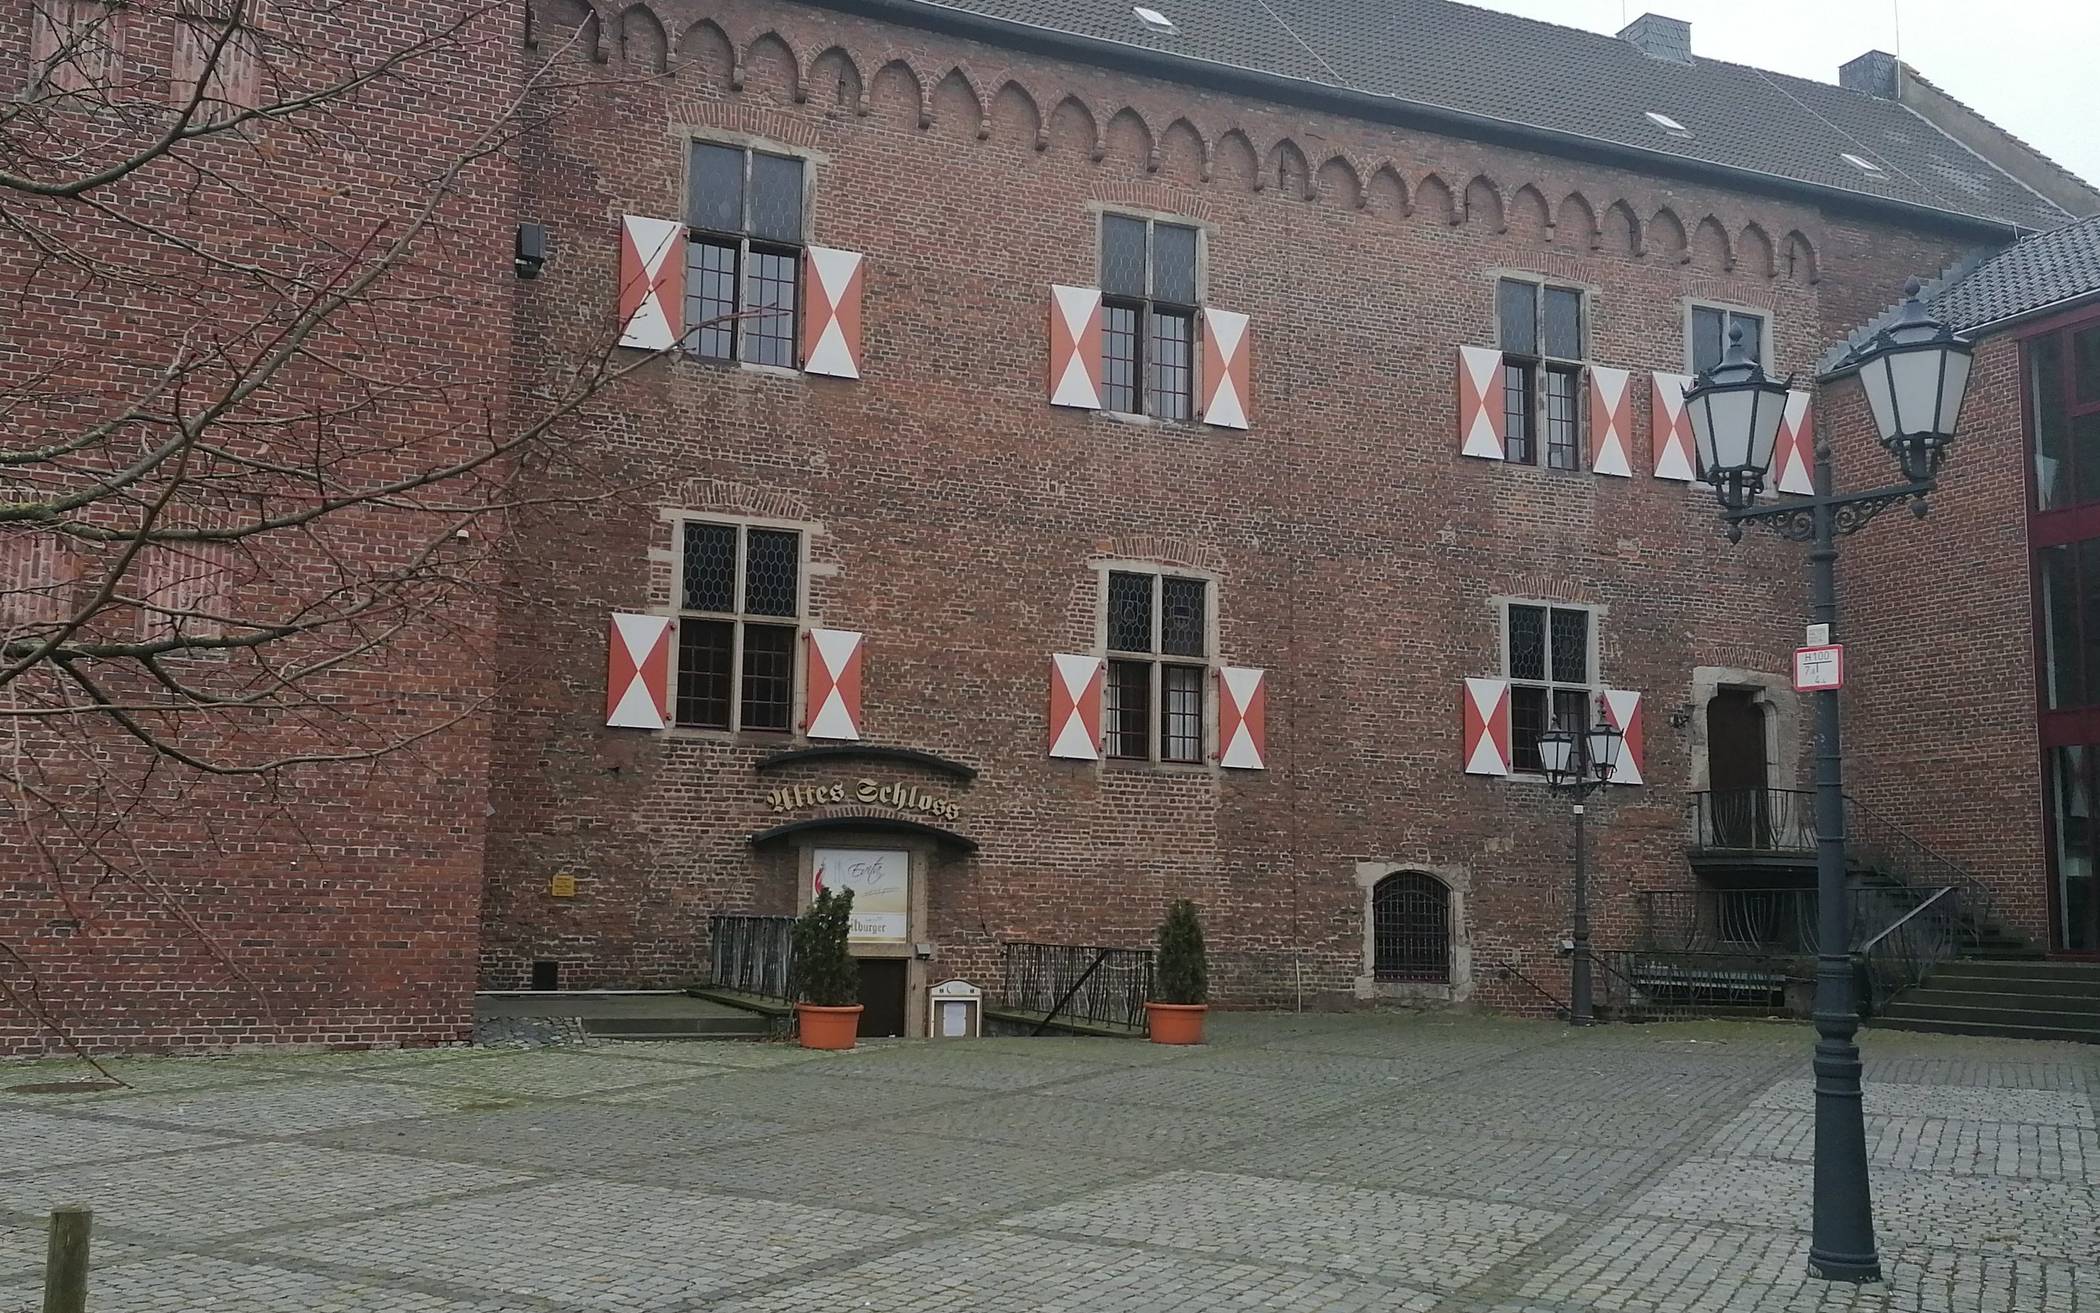  Das Alte Schloss: Die Pläne der Stadt sind aktuell das umstrittene Thema in Grevenbroich.  